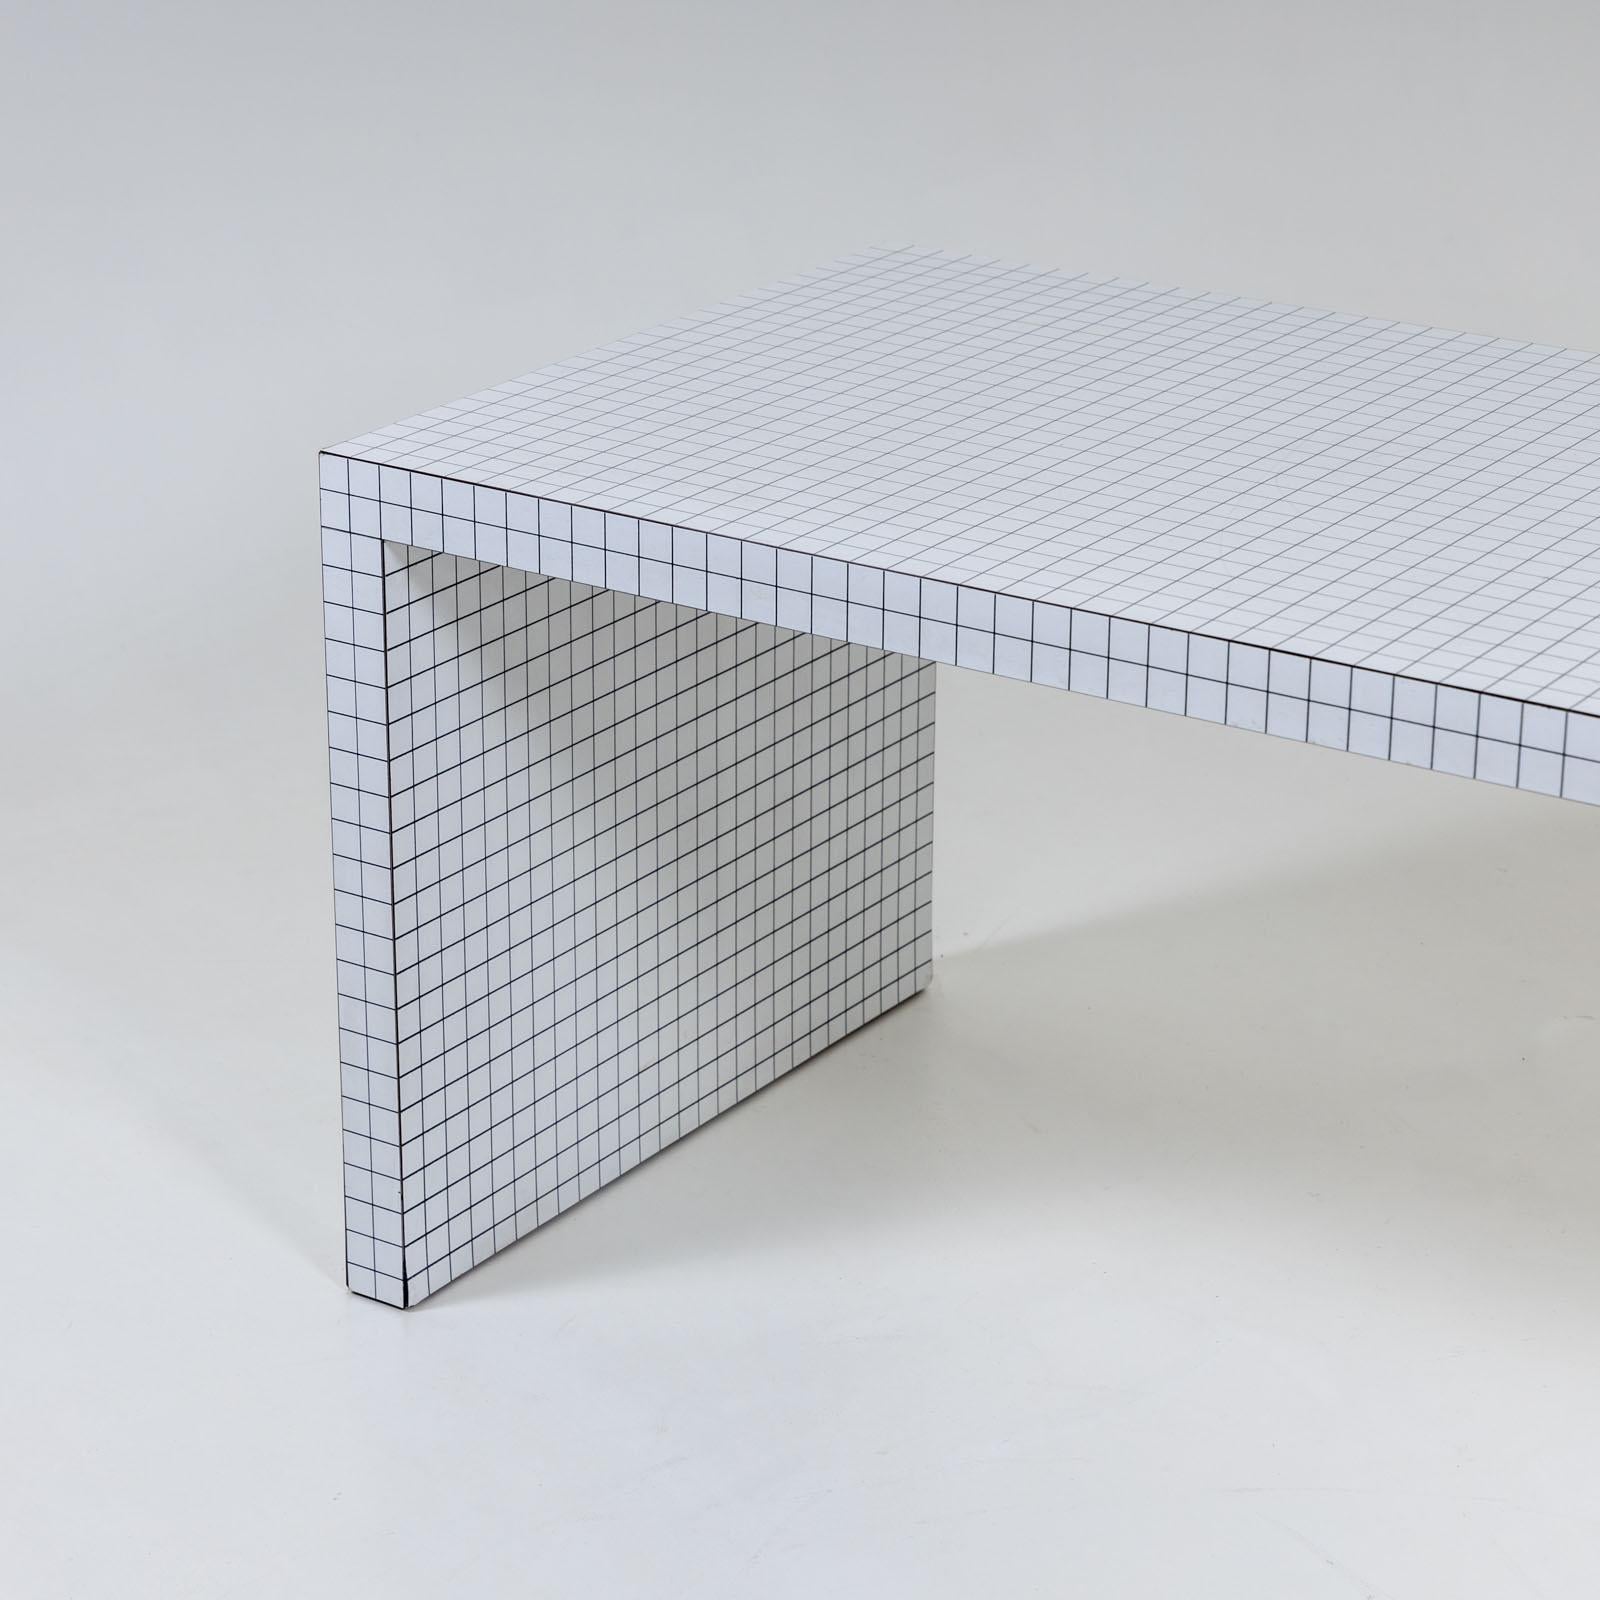 Schreibtisch mit laminierter weißer Oberfläche mit Karomuster. Die Linien haben einen Abstand von 3 cm und gehen an den Rändern und glatten Seiten nahtlos ineinander über. Der Digitaldruck wurde sorgfältig auf eine durchgehend laminierte Oberfläche